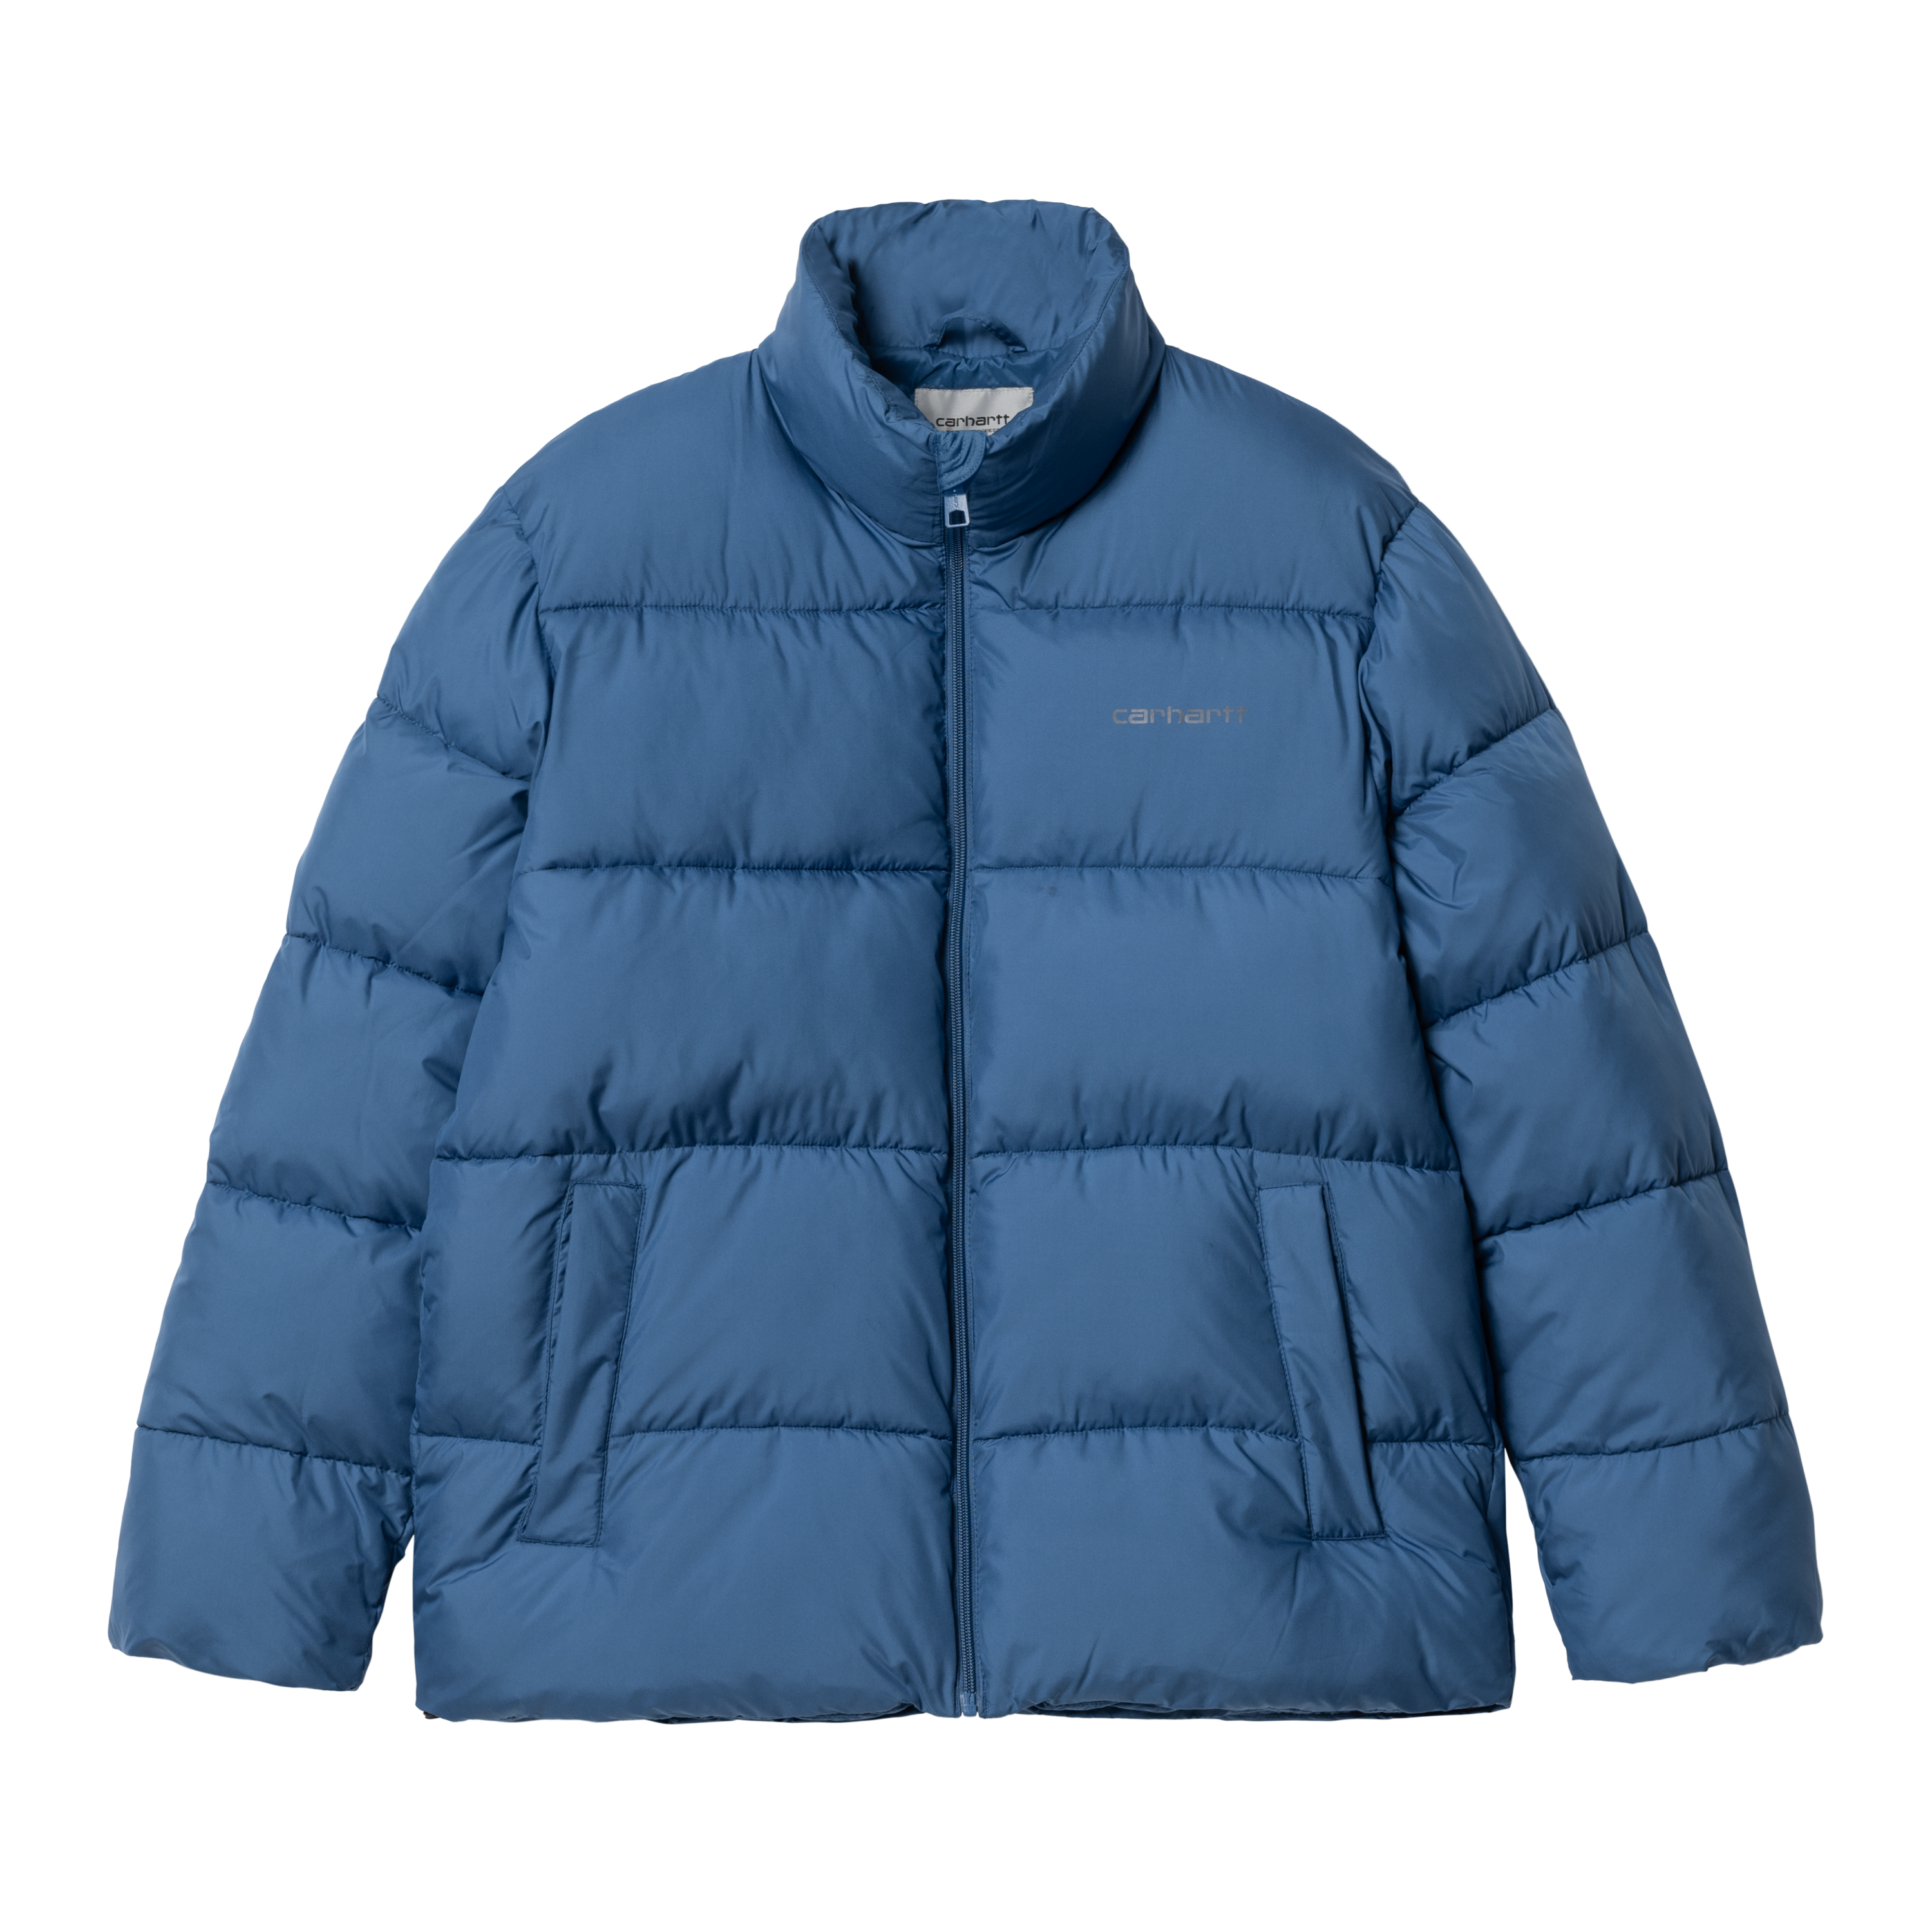 Carhartt WIP Springfield Jacket Bleu